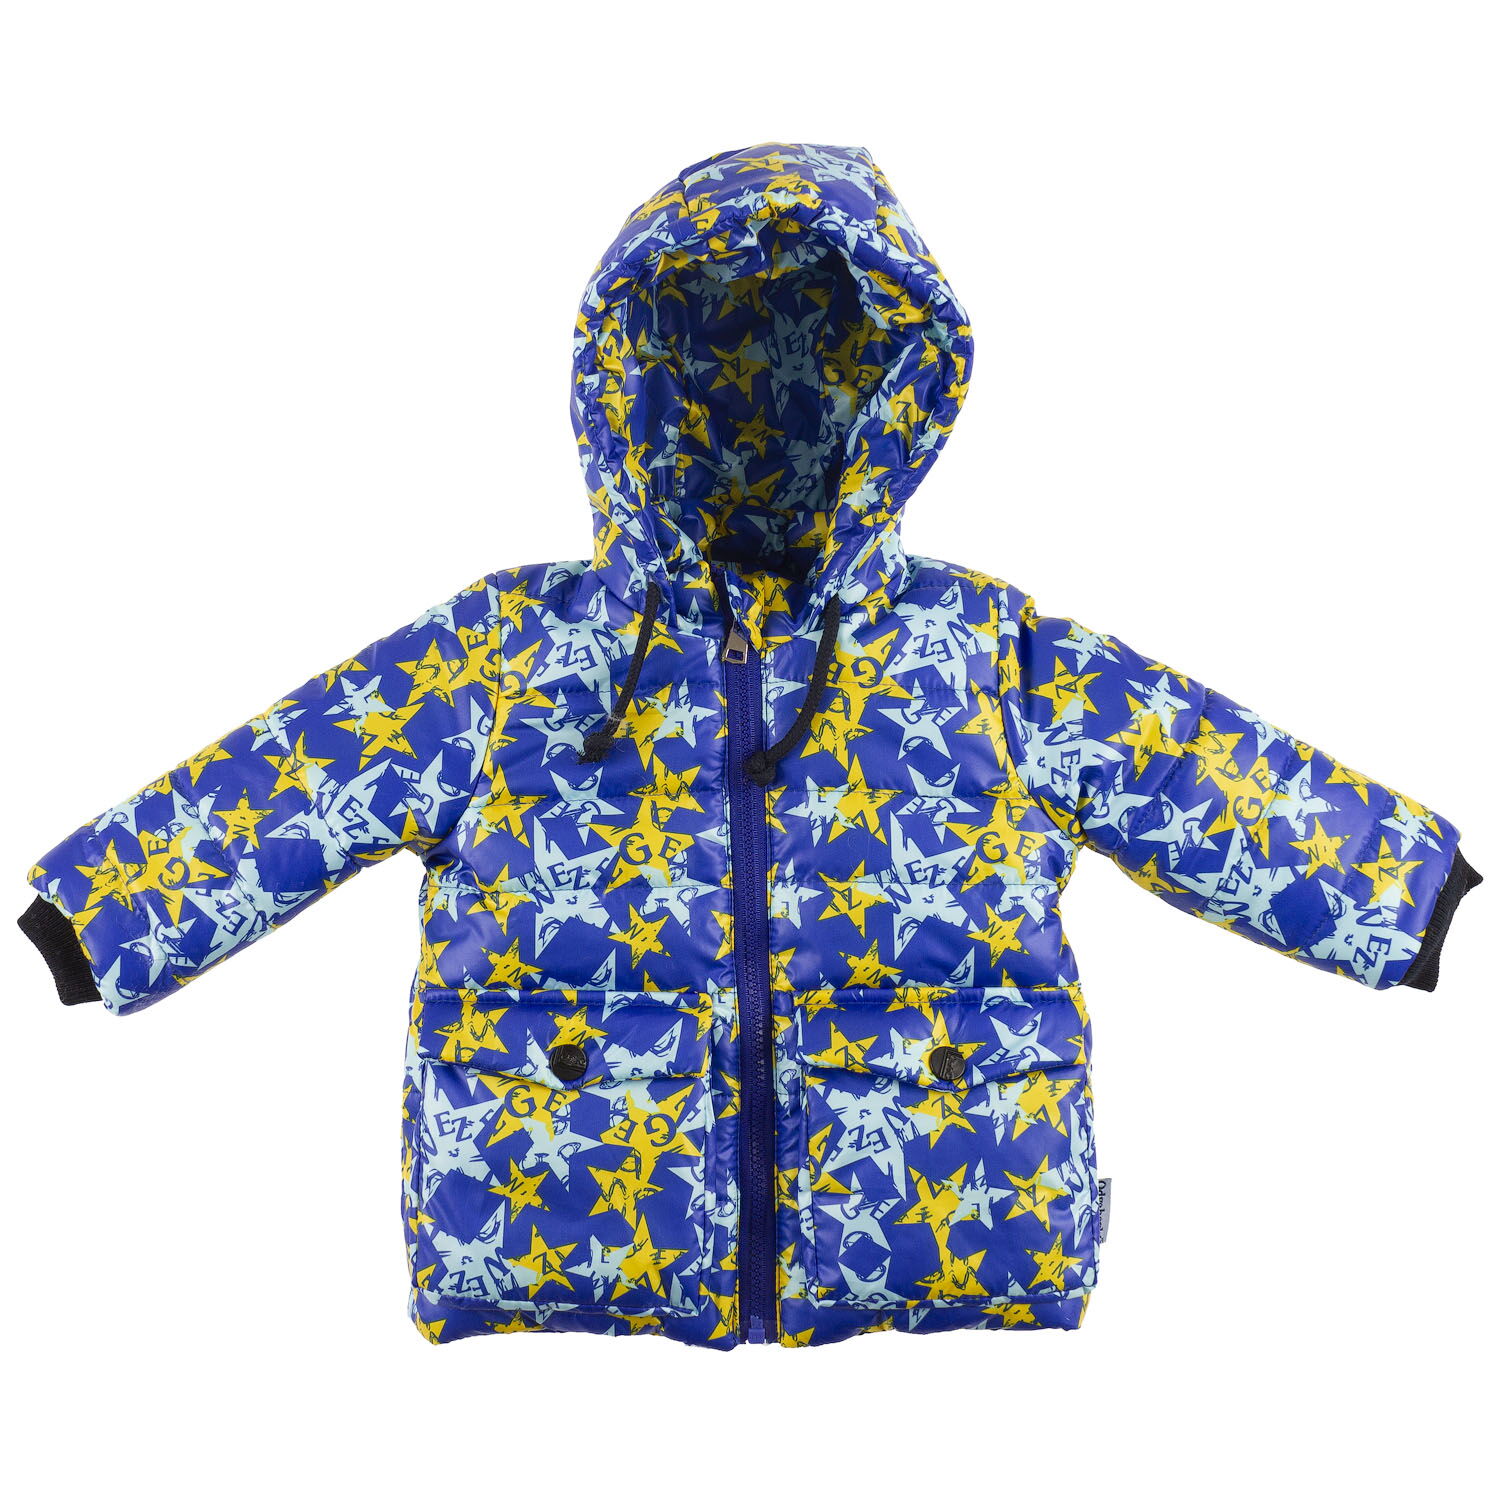 Куртка зимняя для мальчика Одягайко Звезды синий электрик 20250 - цена